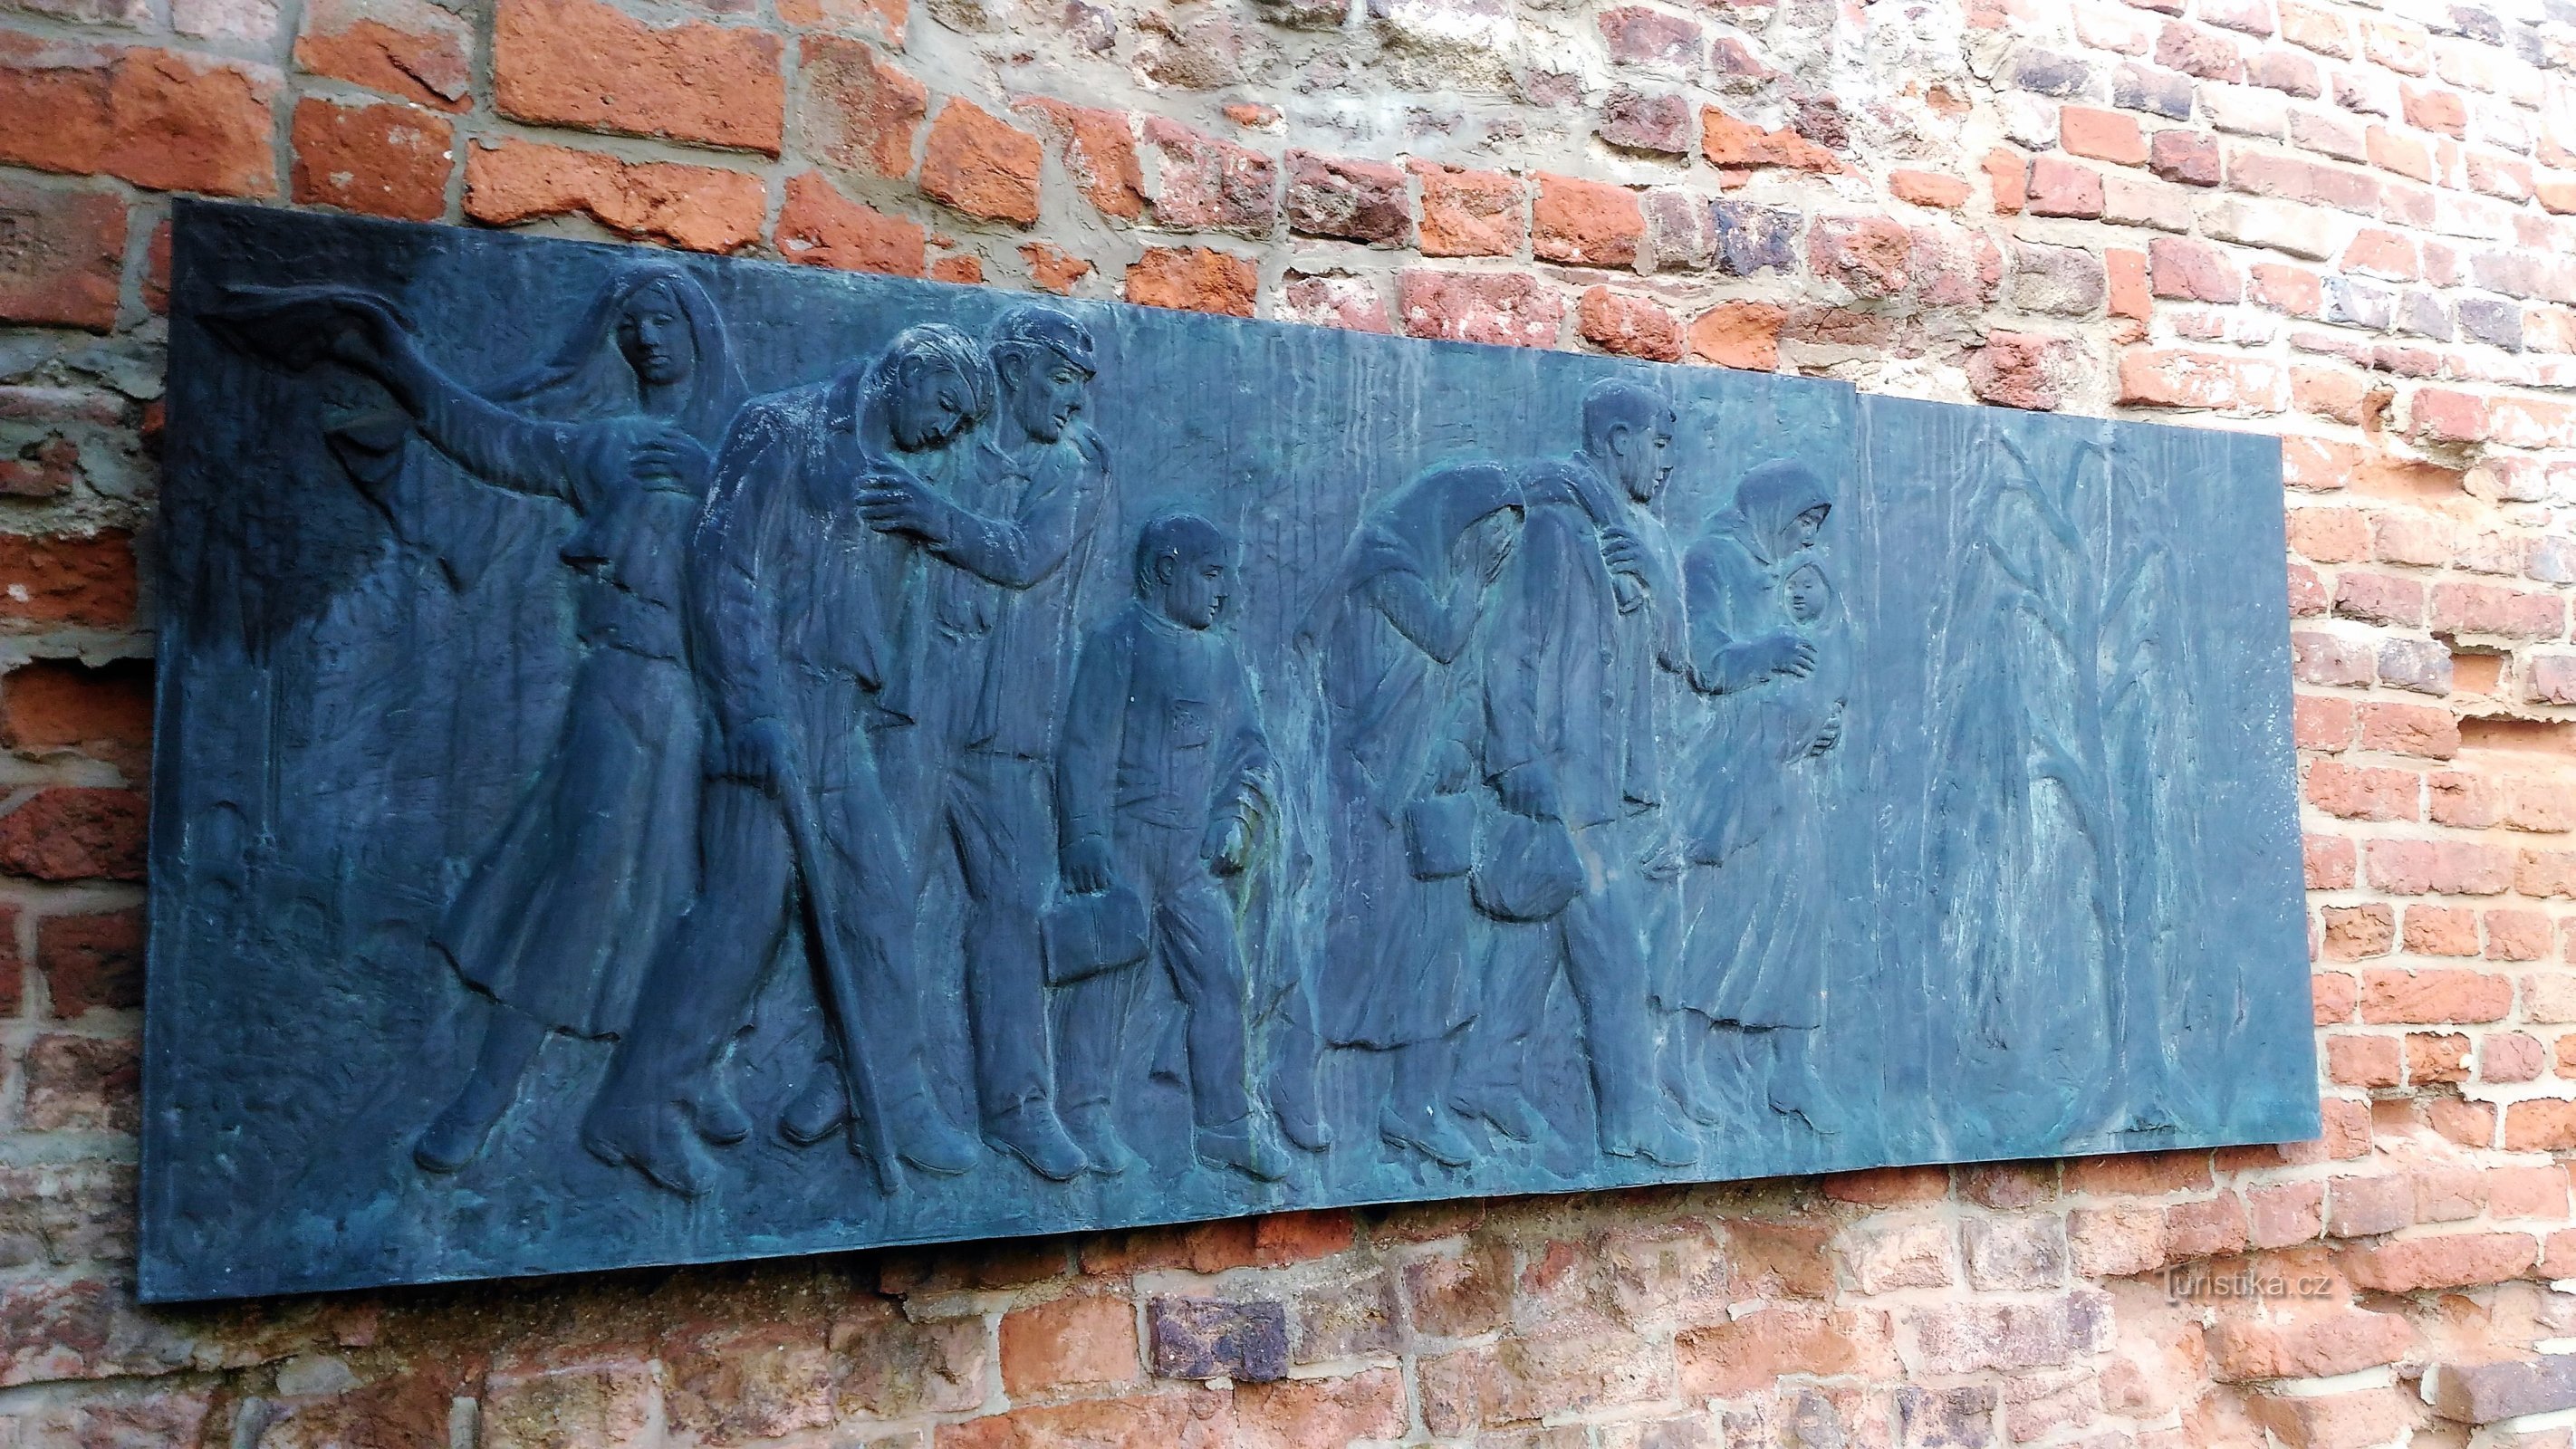 Monument al sidingului de transport din Terezín.